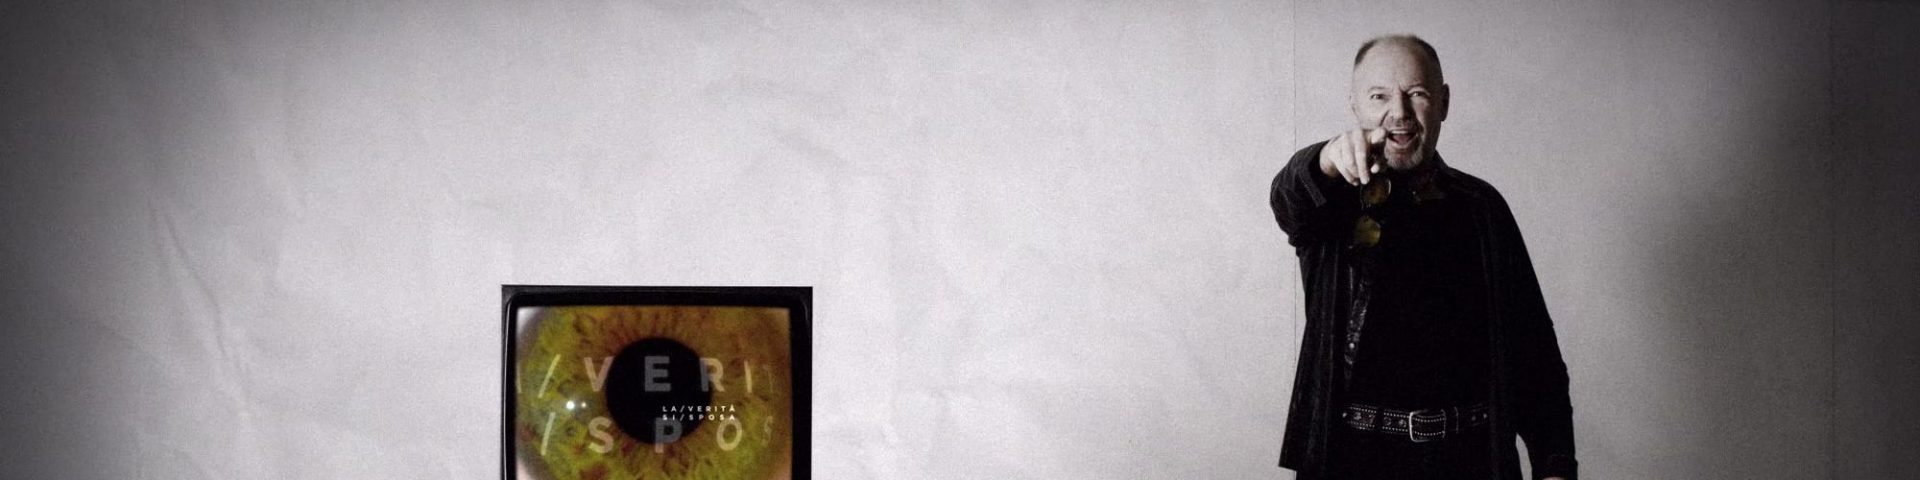 Vasco Rossi, "La verità" è il nuovo singolo - Testo e Video